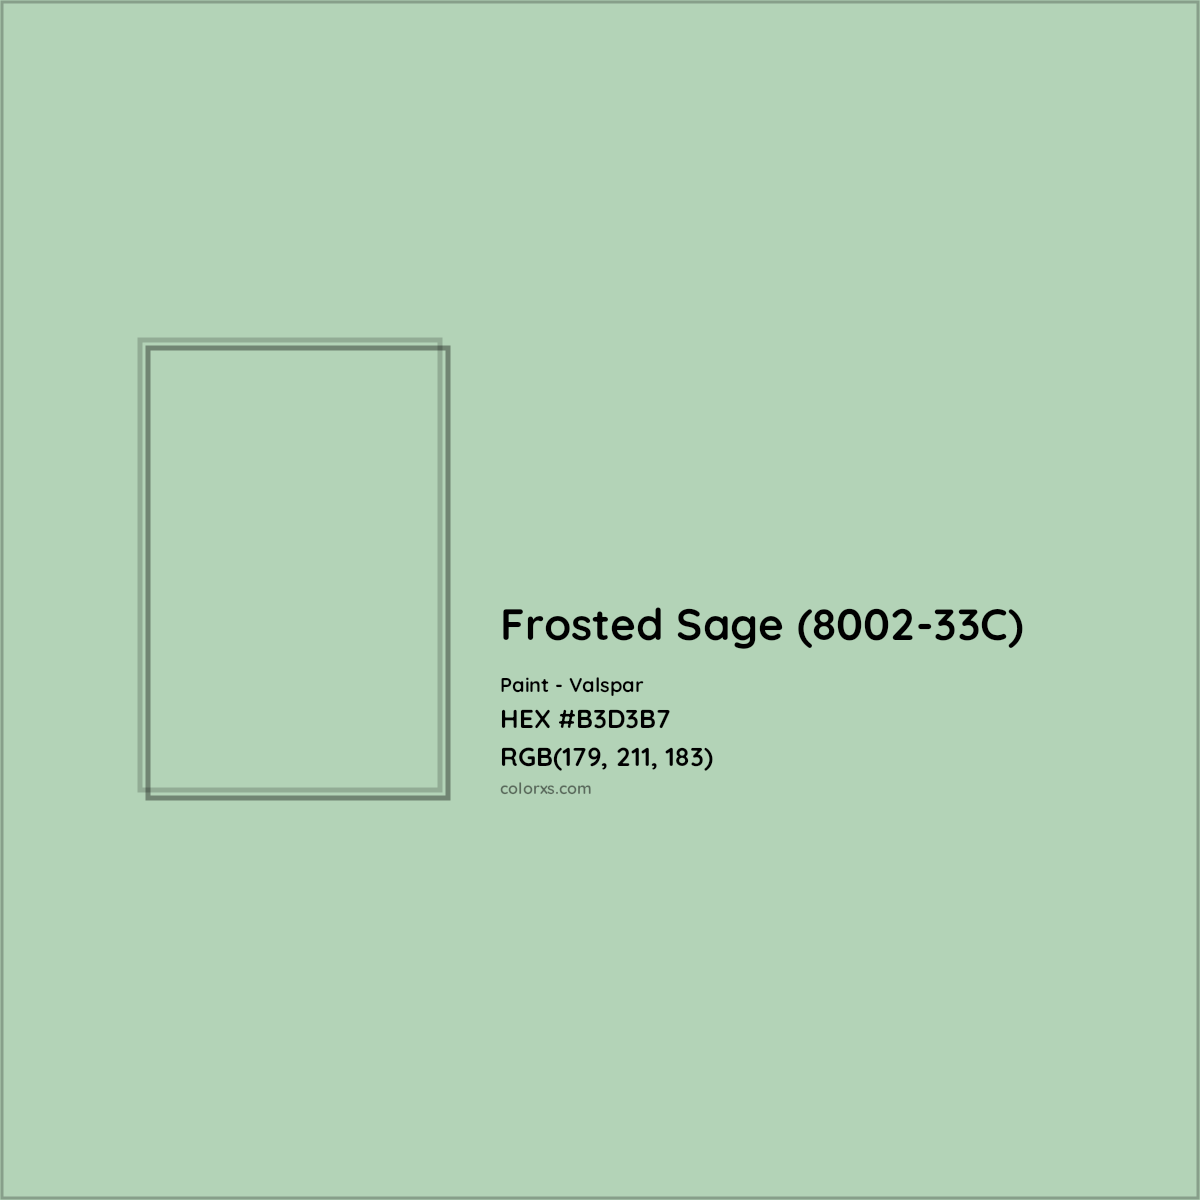 HEX #B3D3B7 Frosted Sage (8002-33C) Paint Valspar - Color Code